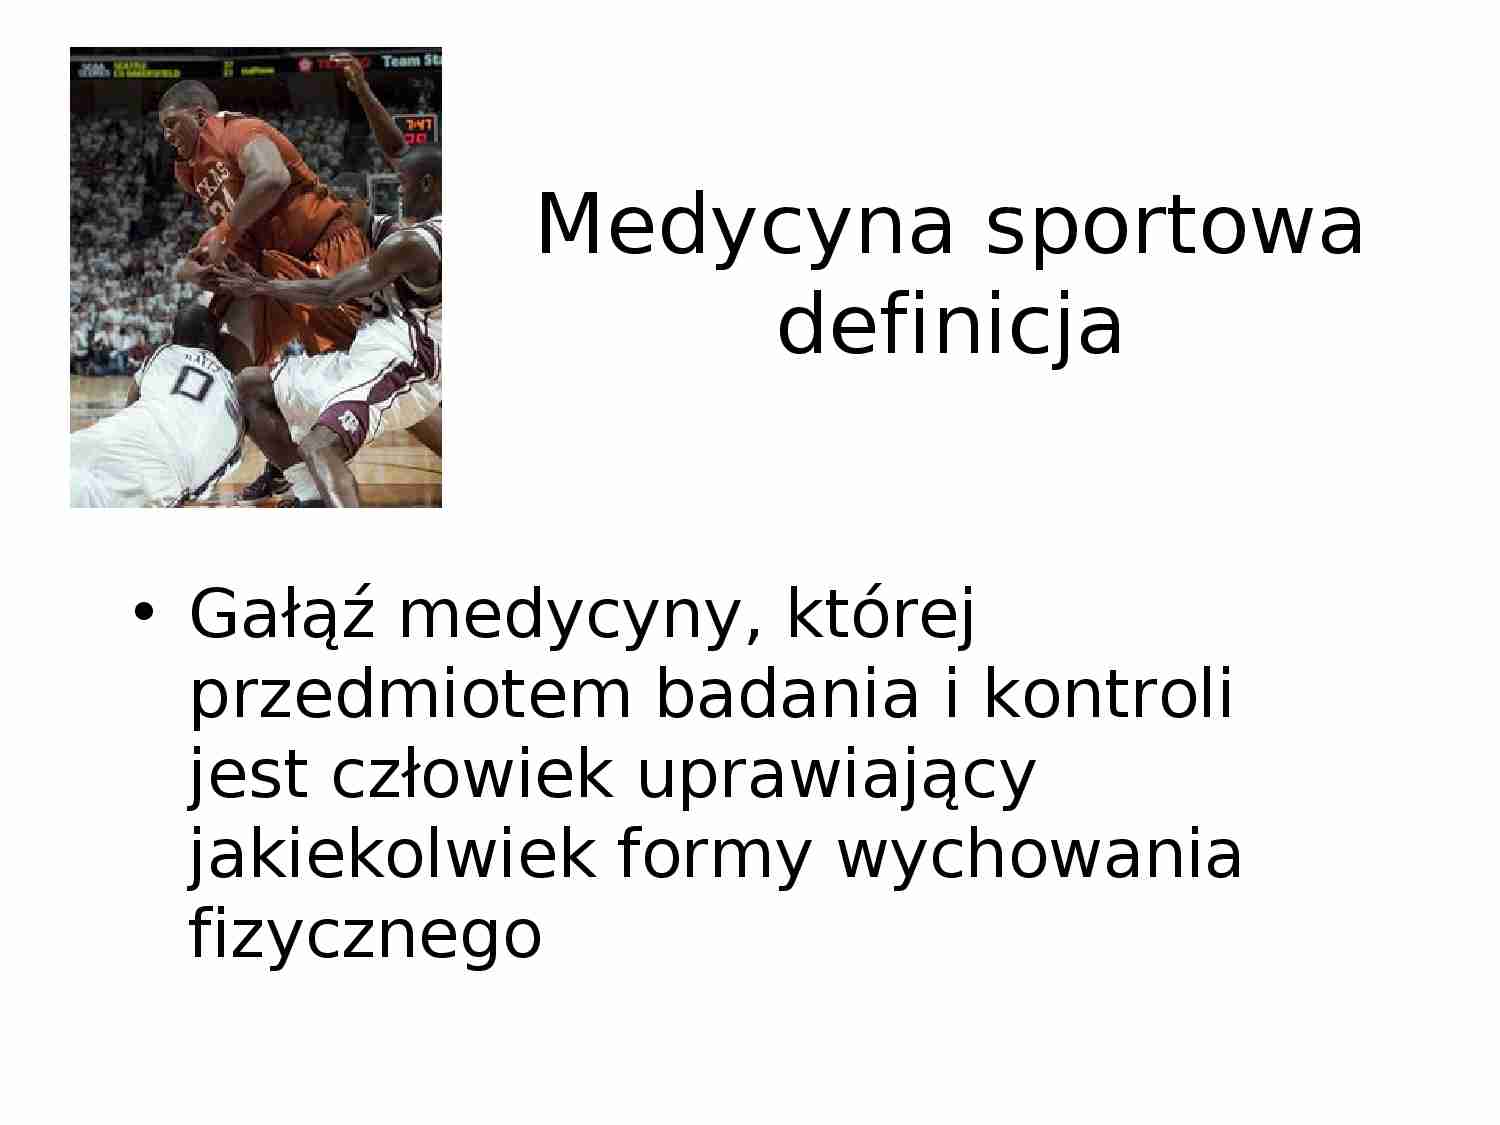 Medycyna sportowa - prezentacja - strona 1